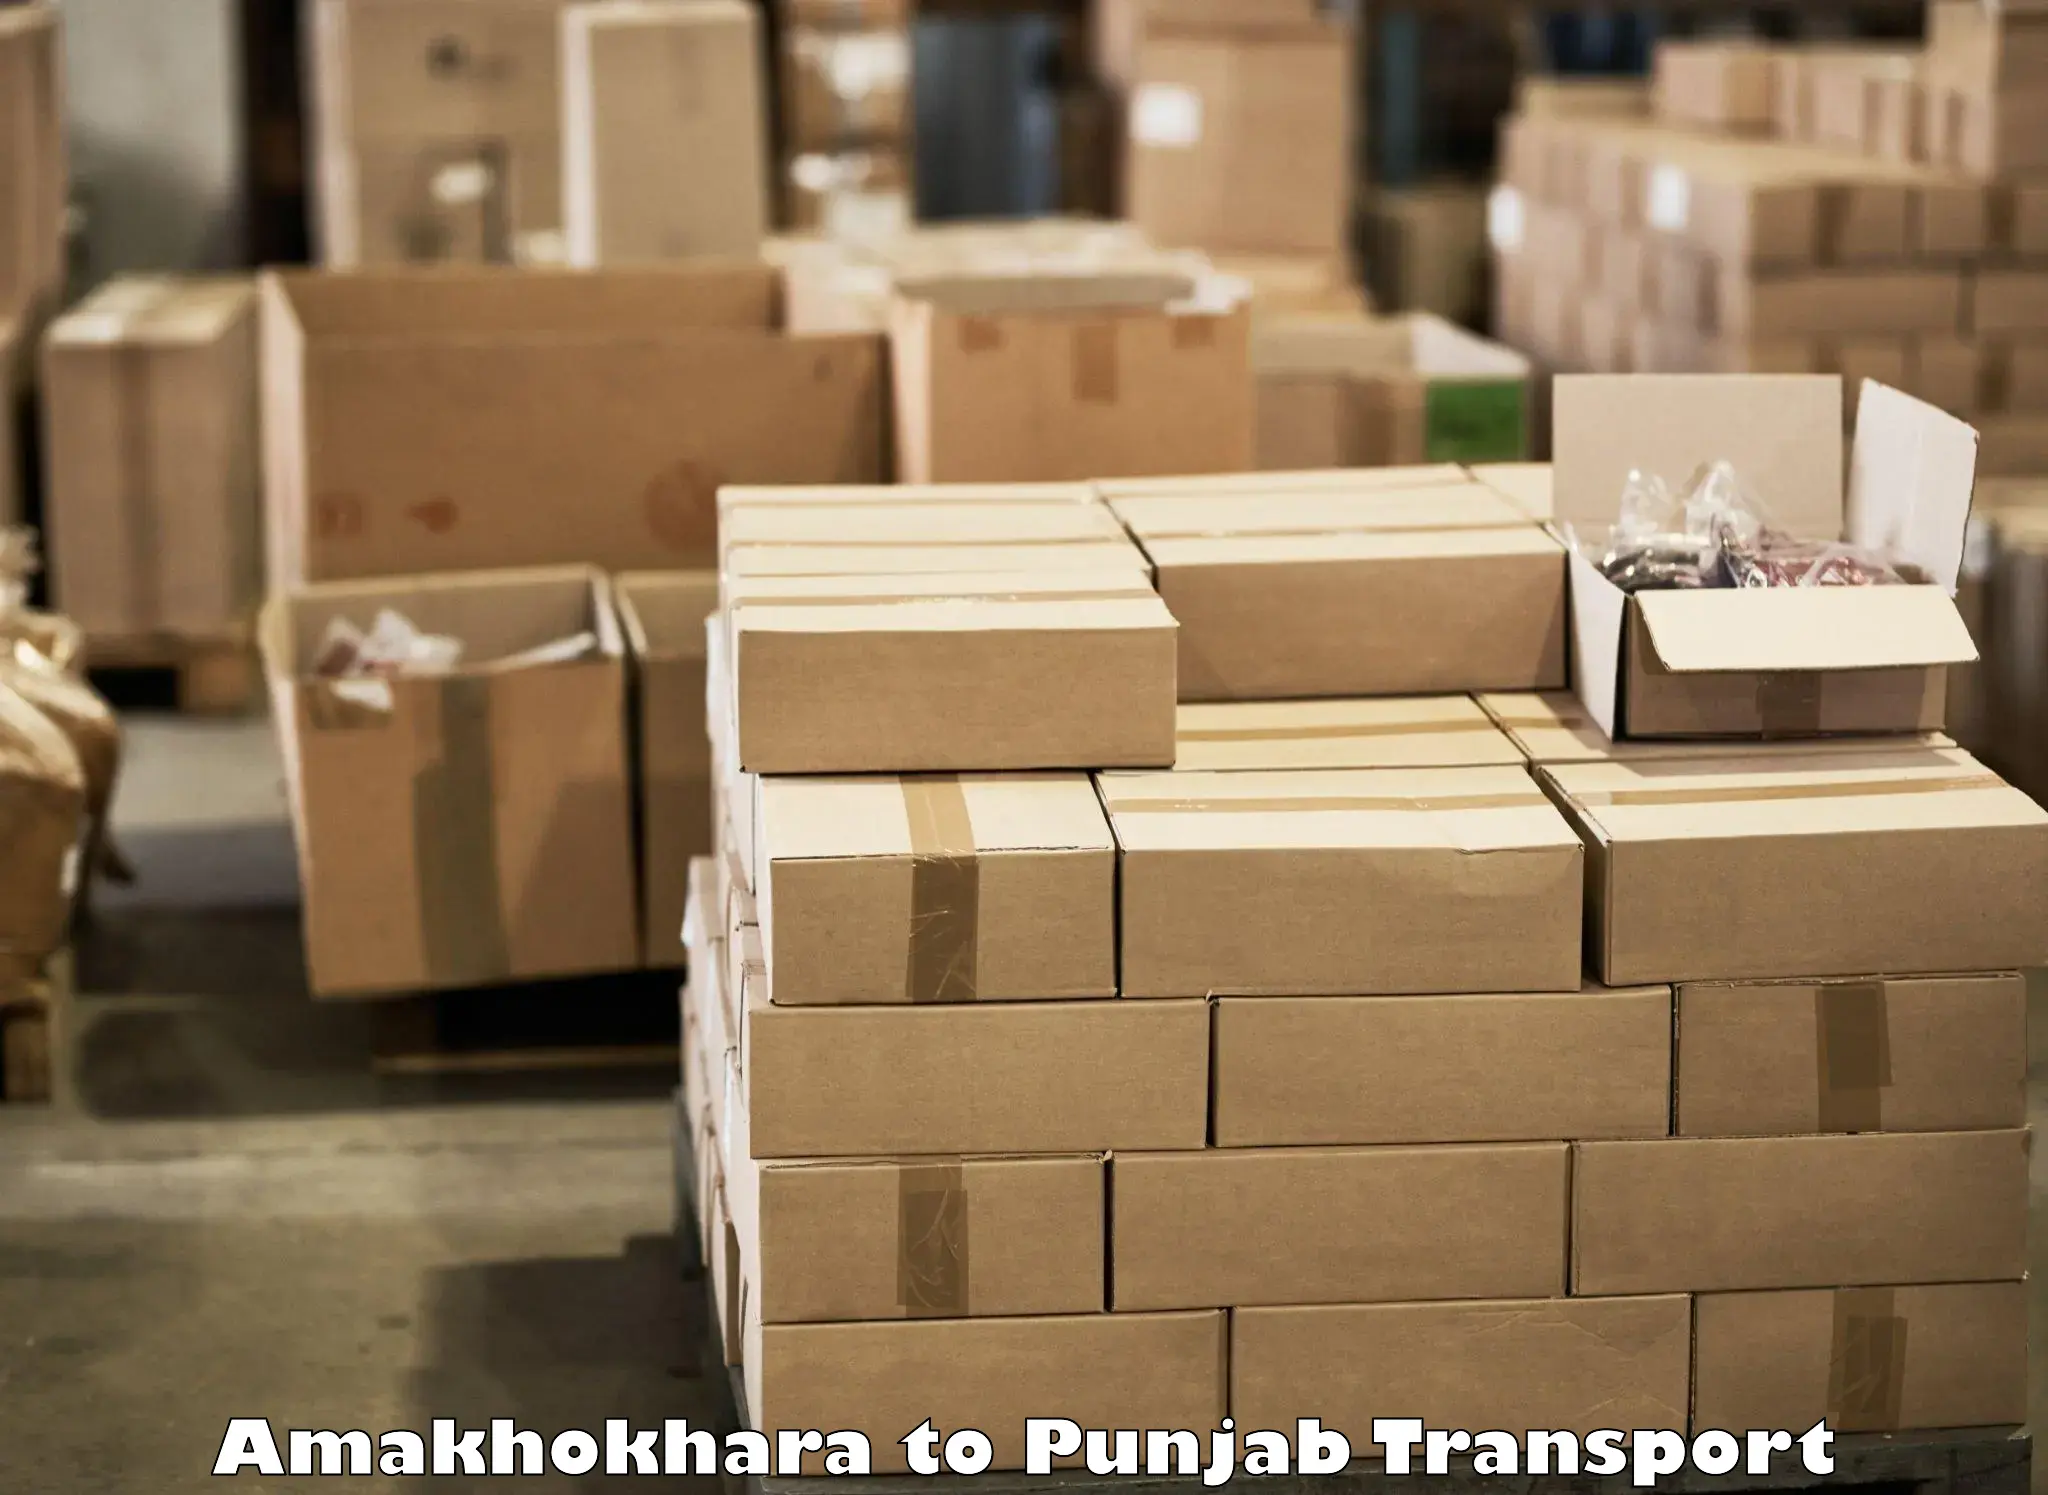 Intercity transport in Amakhokhara to Punjab